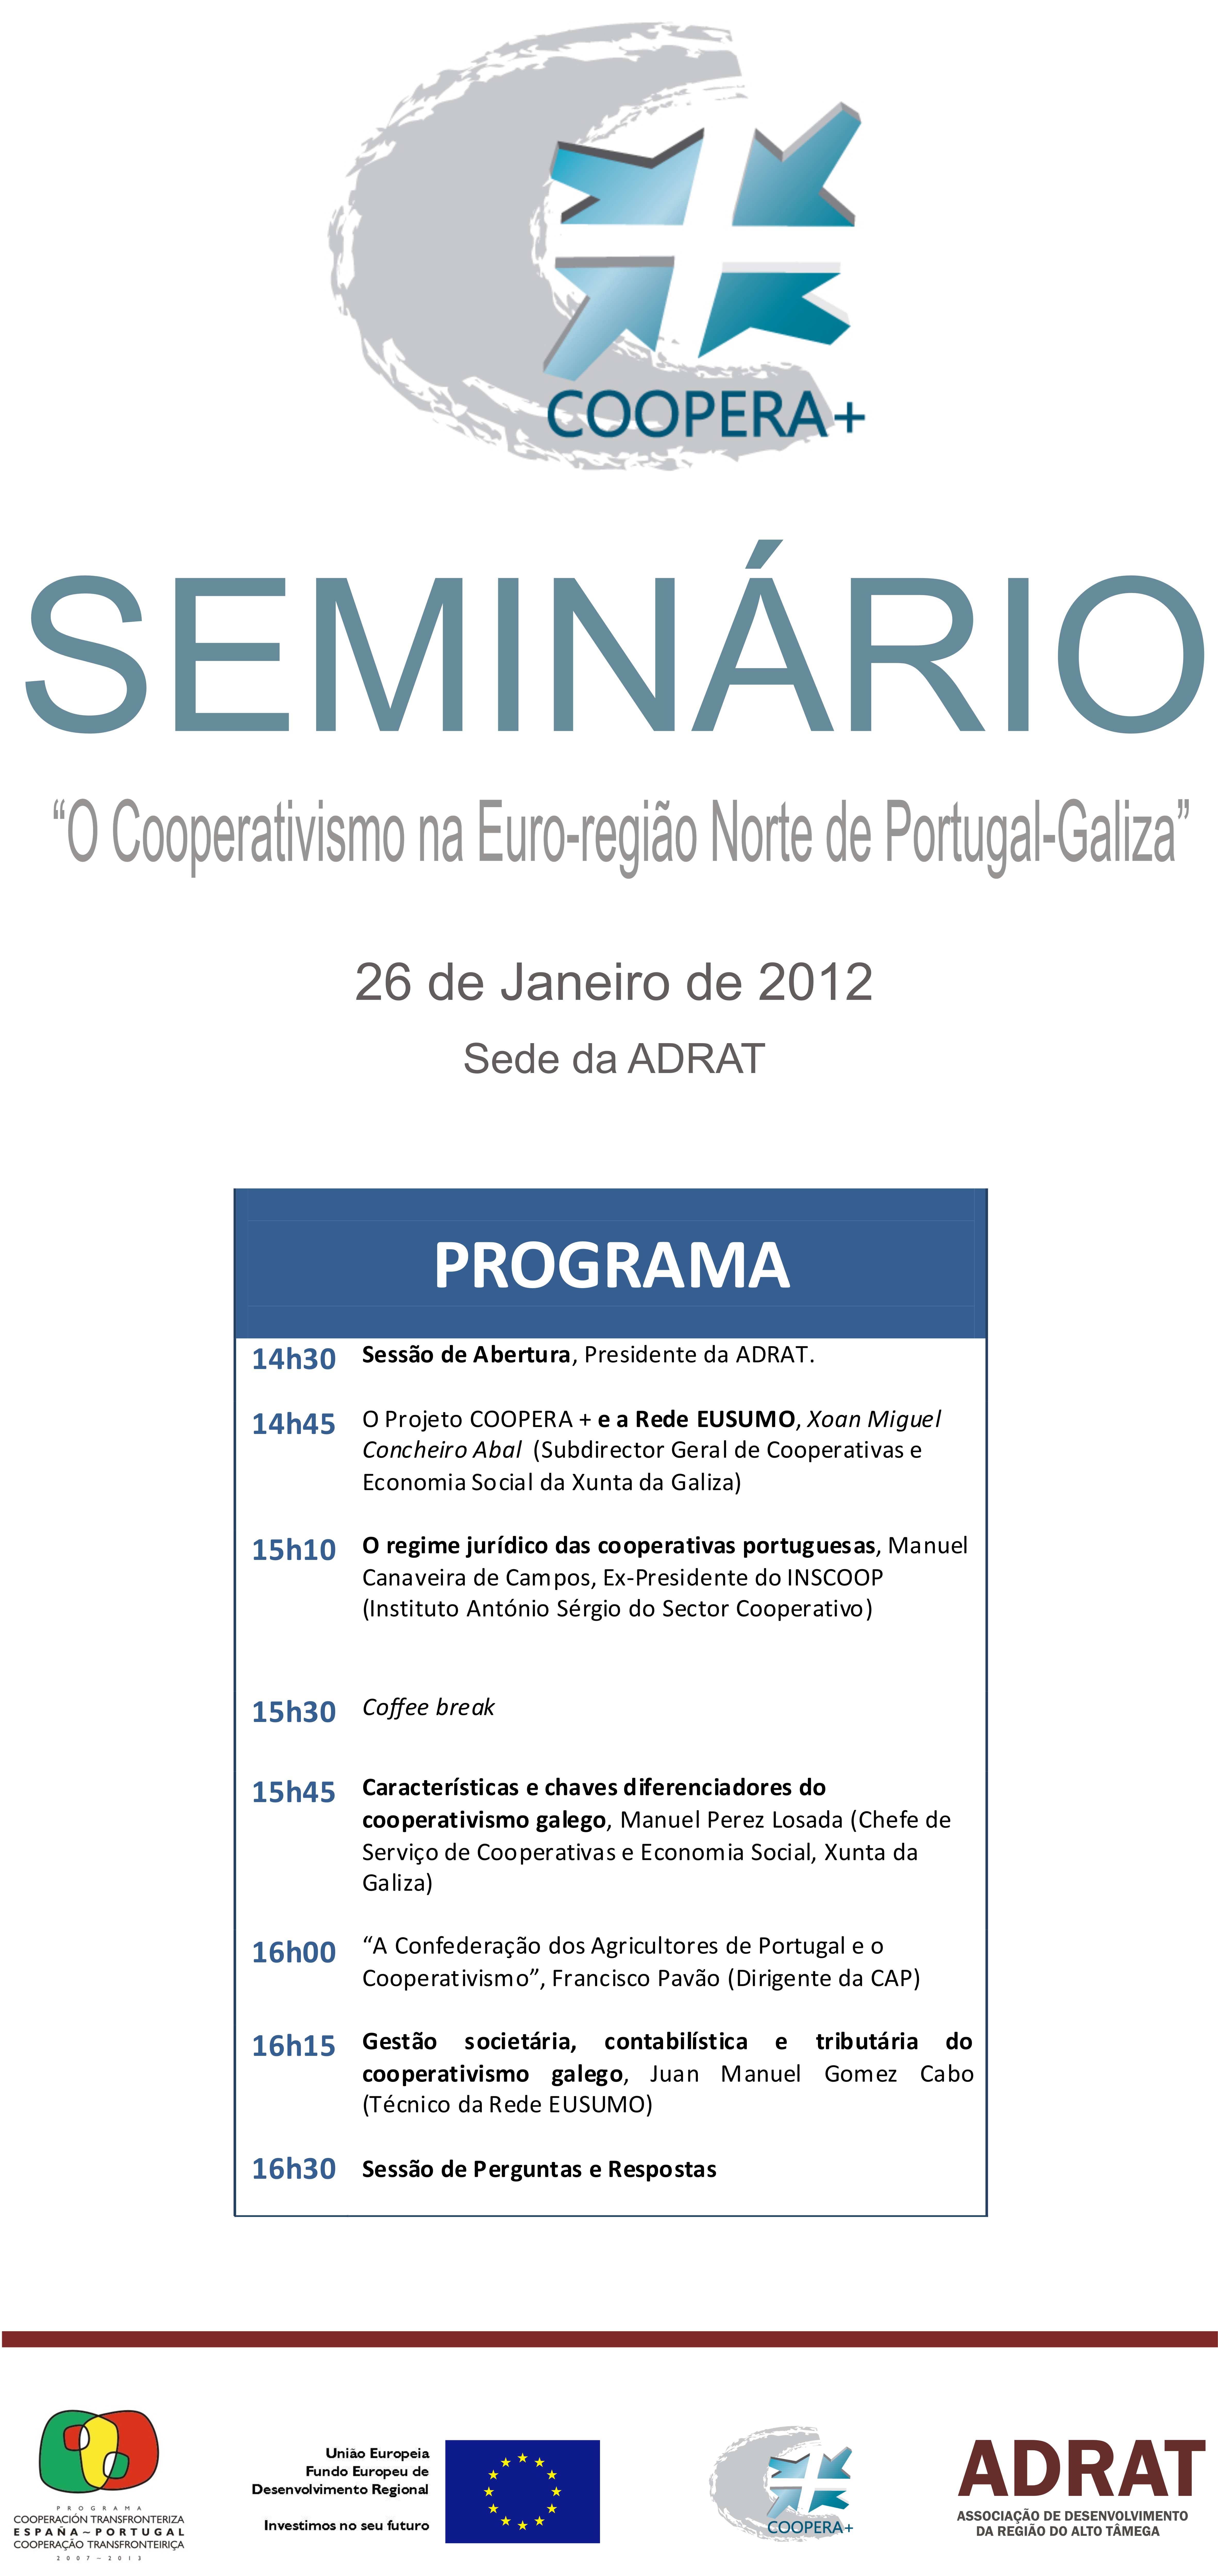 Seminario “El Cooperativismo en la Eurorregión Norte de Portugal-Galicia” – proyecto 0474_COOPERA_MAS_1_E (Chaves, 26/01/2012)